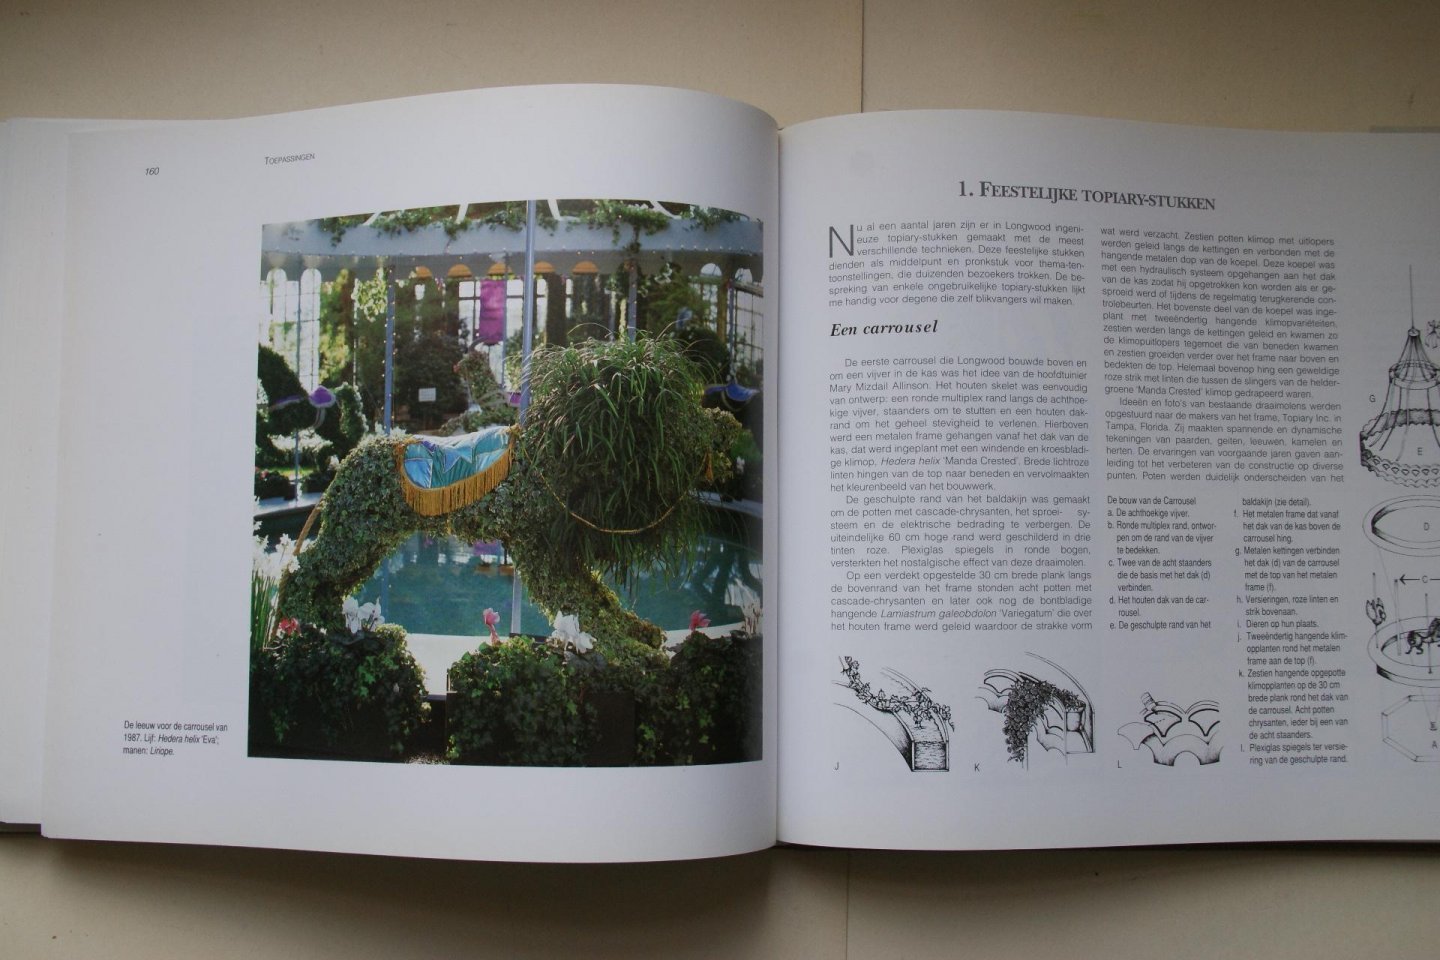 Patricia Riley Hammer - Topiary: Vormbomen, Plantsierkunst  Vormsnoei   Een leerboek voor alle vormen te kunnen maken ook de fantasie modellen worden duidelijk beschreven .